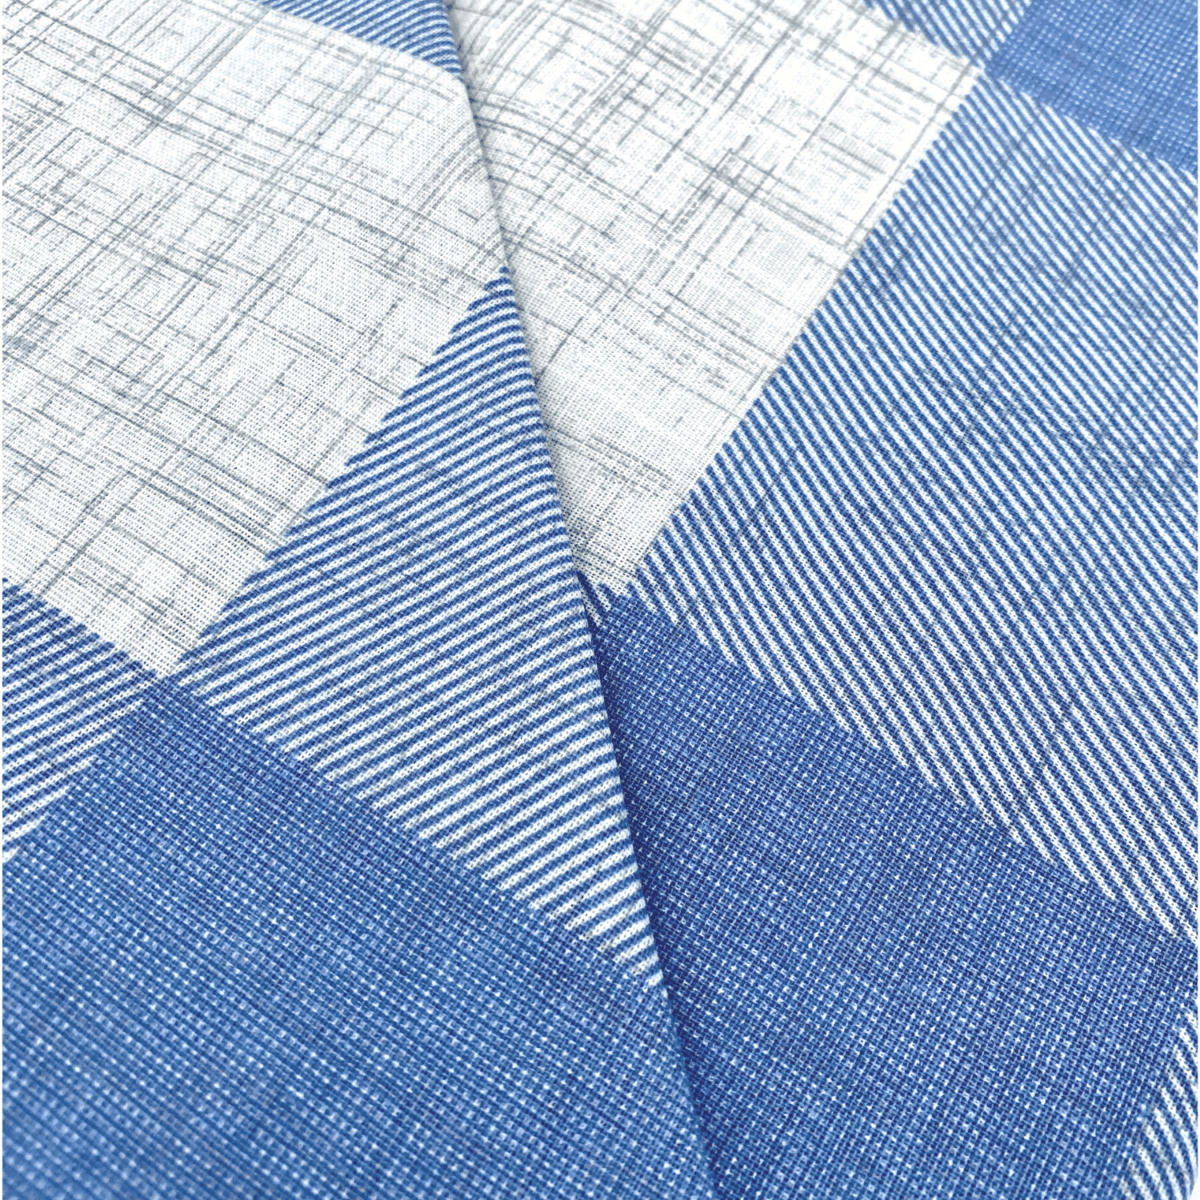 completo-lenzuola-intersezione-azzurro-penelope-quadretto-perla-antracite-bianco-geometrico-classico-fold-dettaglio